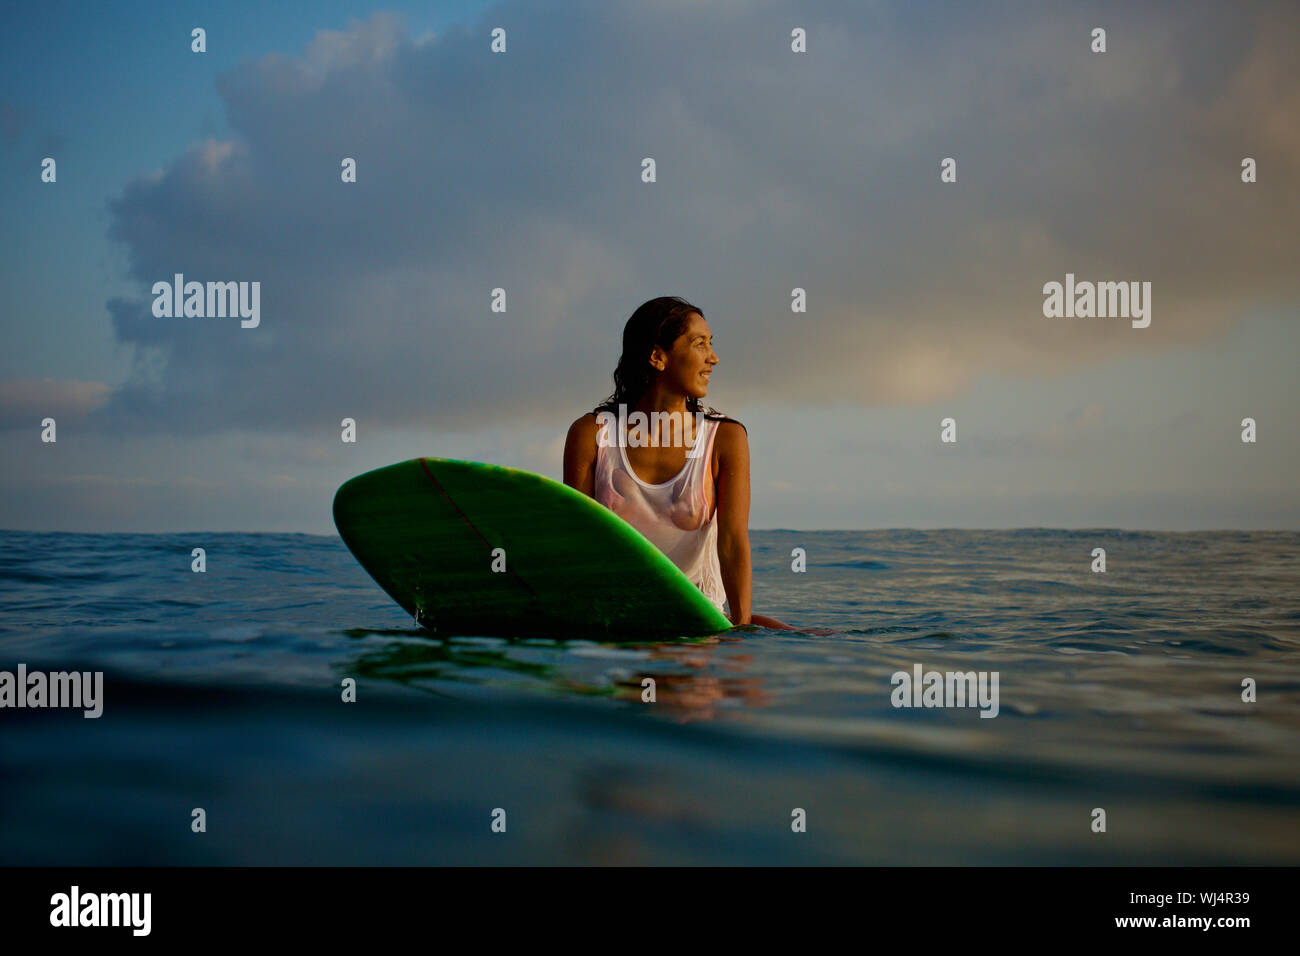 Surfer femenina esperando en tablas de surf en el océano Foto de stock